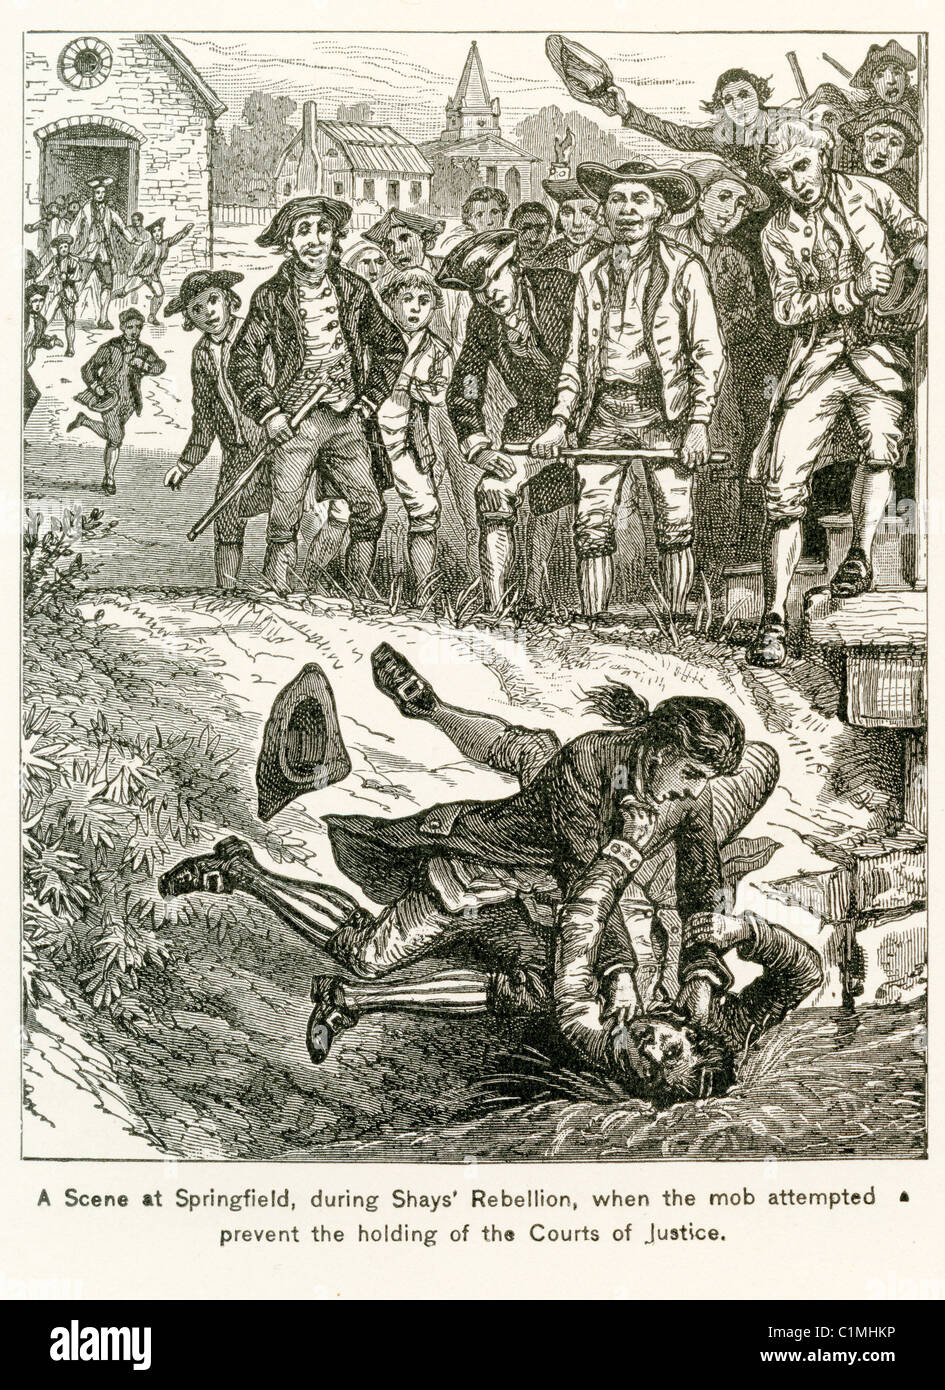 Alte Lithographie von der Shays Rebellion, Springfield, Massachusetts 1786-1787 Stockfoto